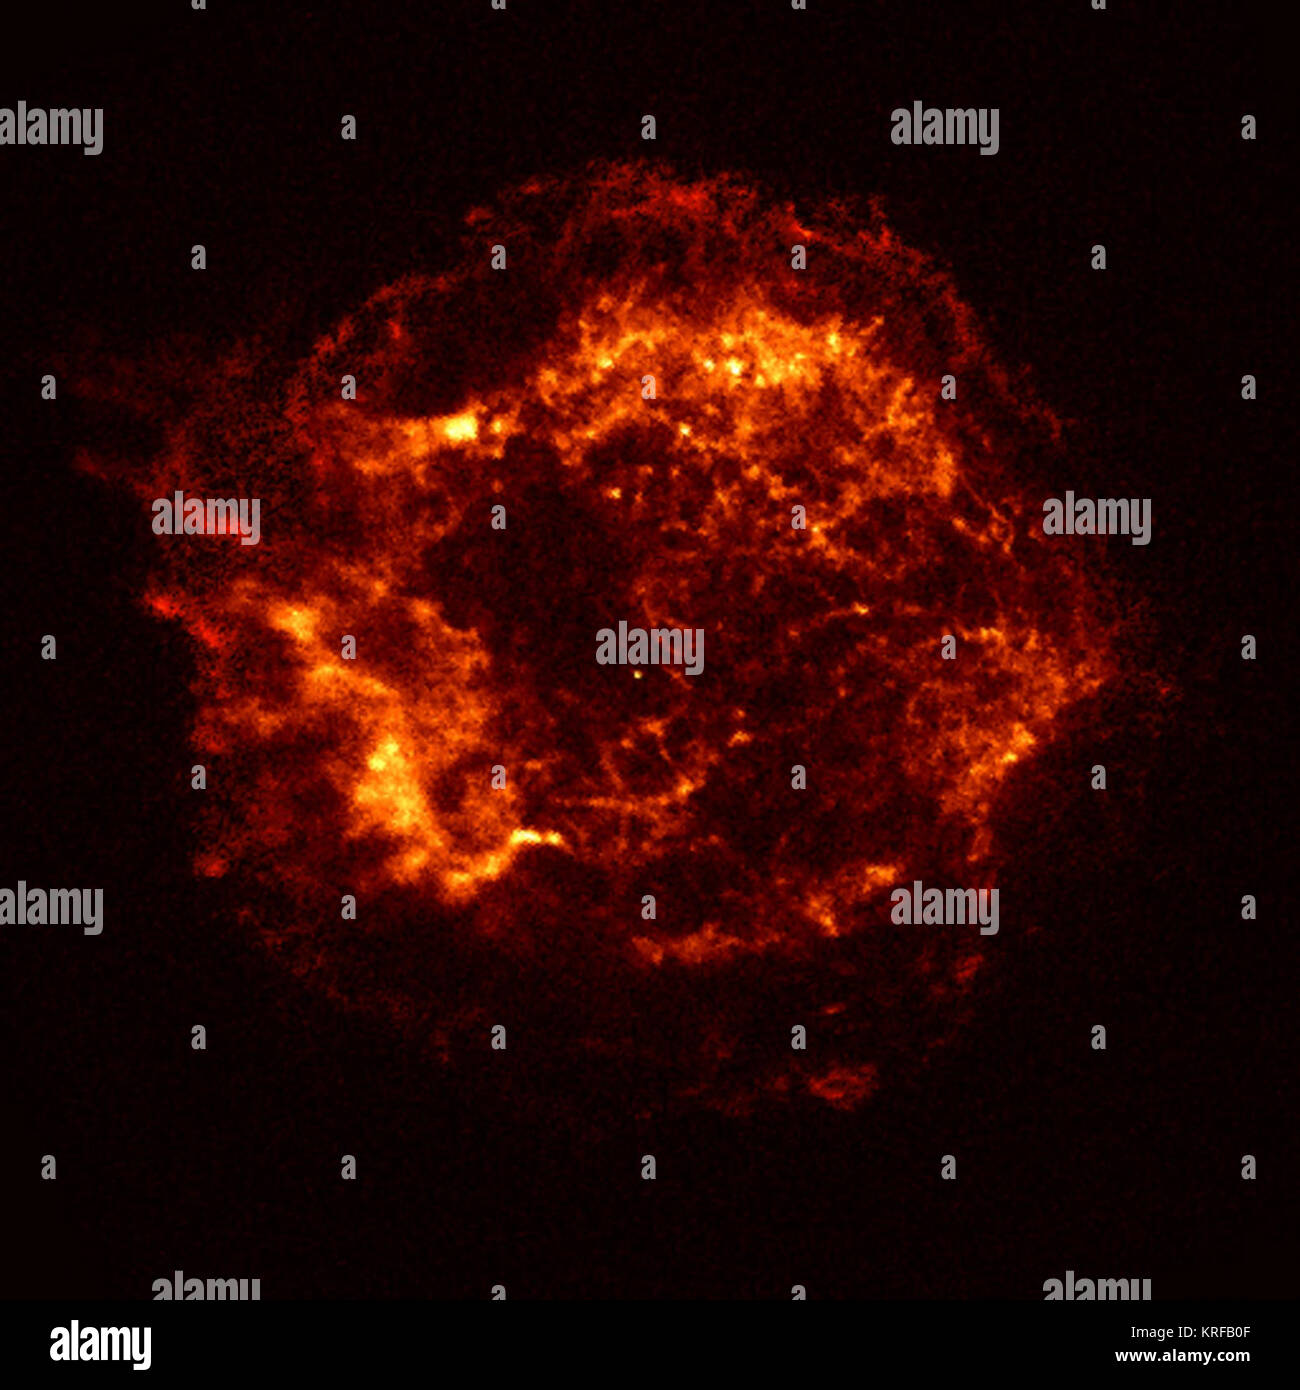 Dieser X-ray Image der Cassiopeia A (CAS) Überreste einer Supernova ist die offizielle erste Licht Bild des Chandra X-ray Observatory. Die 5.000 zweite Bild wurde mit der Advanced CCD Imaging Spectrometer (ACIS). Zwei Stosswellen sind sichtbar: Eine schnelle äußere Schock und einen langsameren inneren Schock. Die innere Druckwelle ist vermutlich aufgrund der Kollision der Ejekta aus der Supernova Explosion mit einer zirkumstellaren Hülle von Material, es Heizung auf eine Temperatur von 10 Millionen Grad Celsius. Die äußere Druckwelle ist analog zu einem ehrfürchtigen sonic Boom, die aus dieser Kollision. Das helle Objekt n Stockfoto